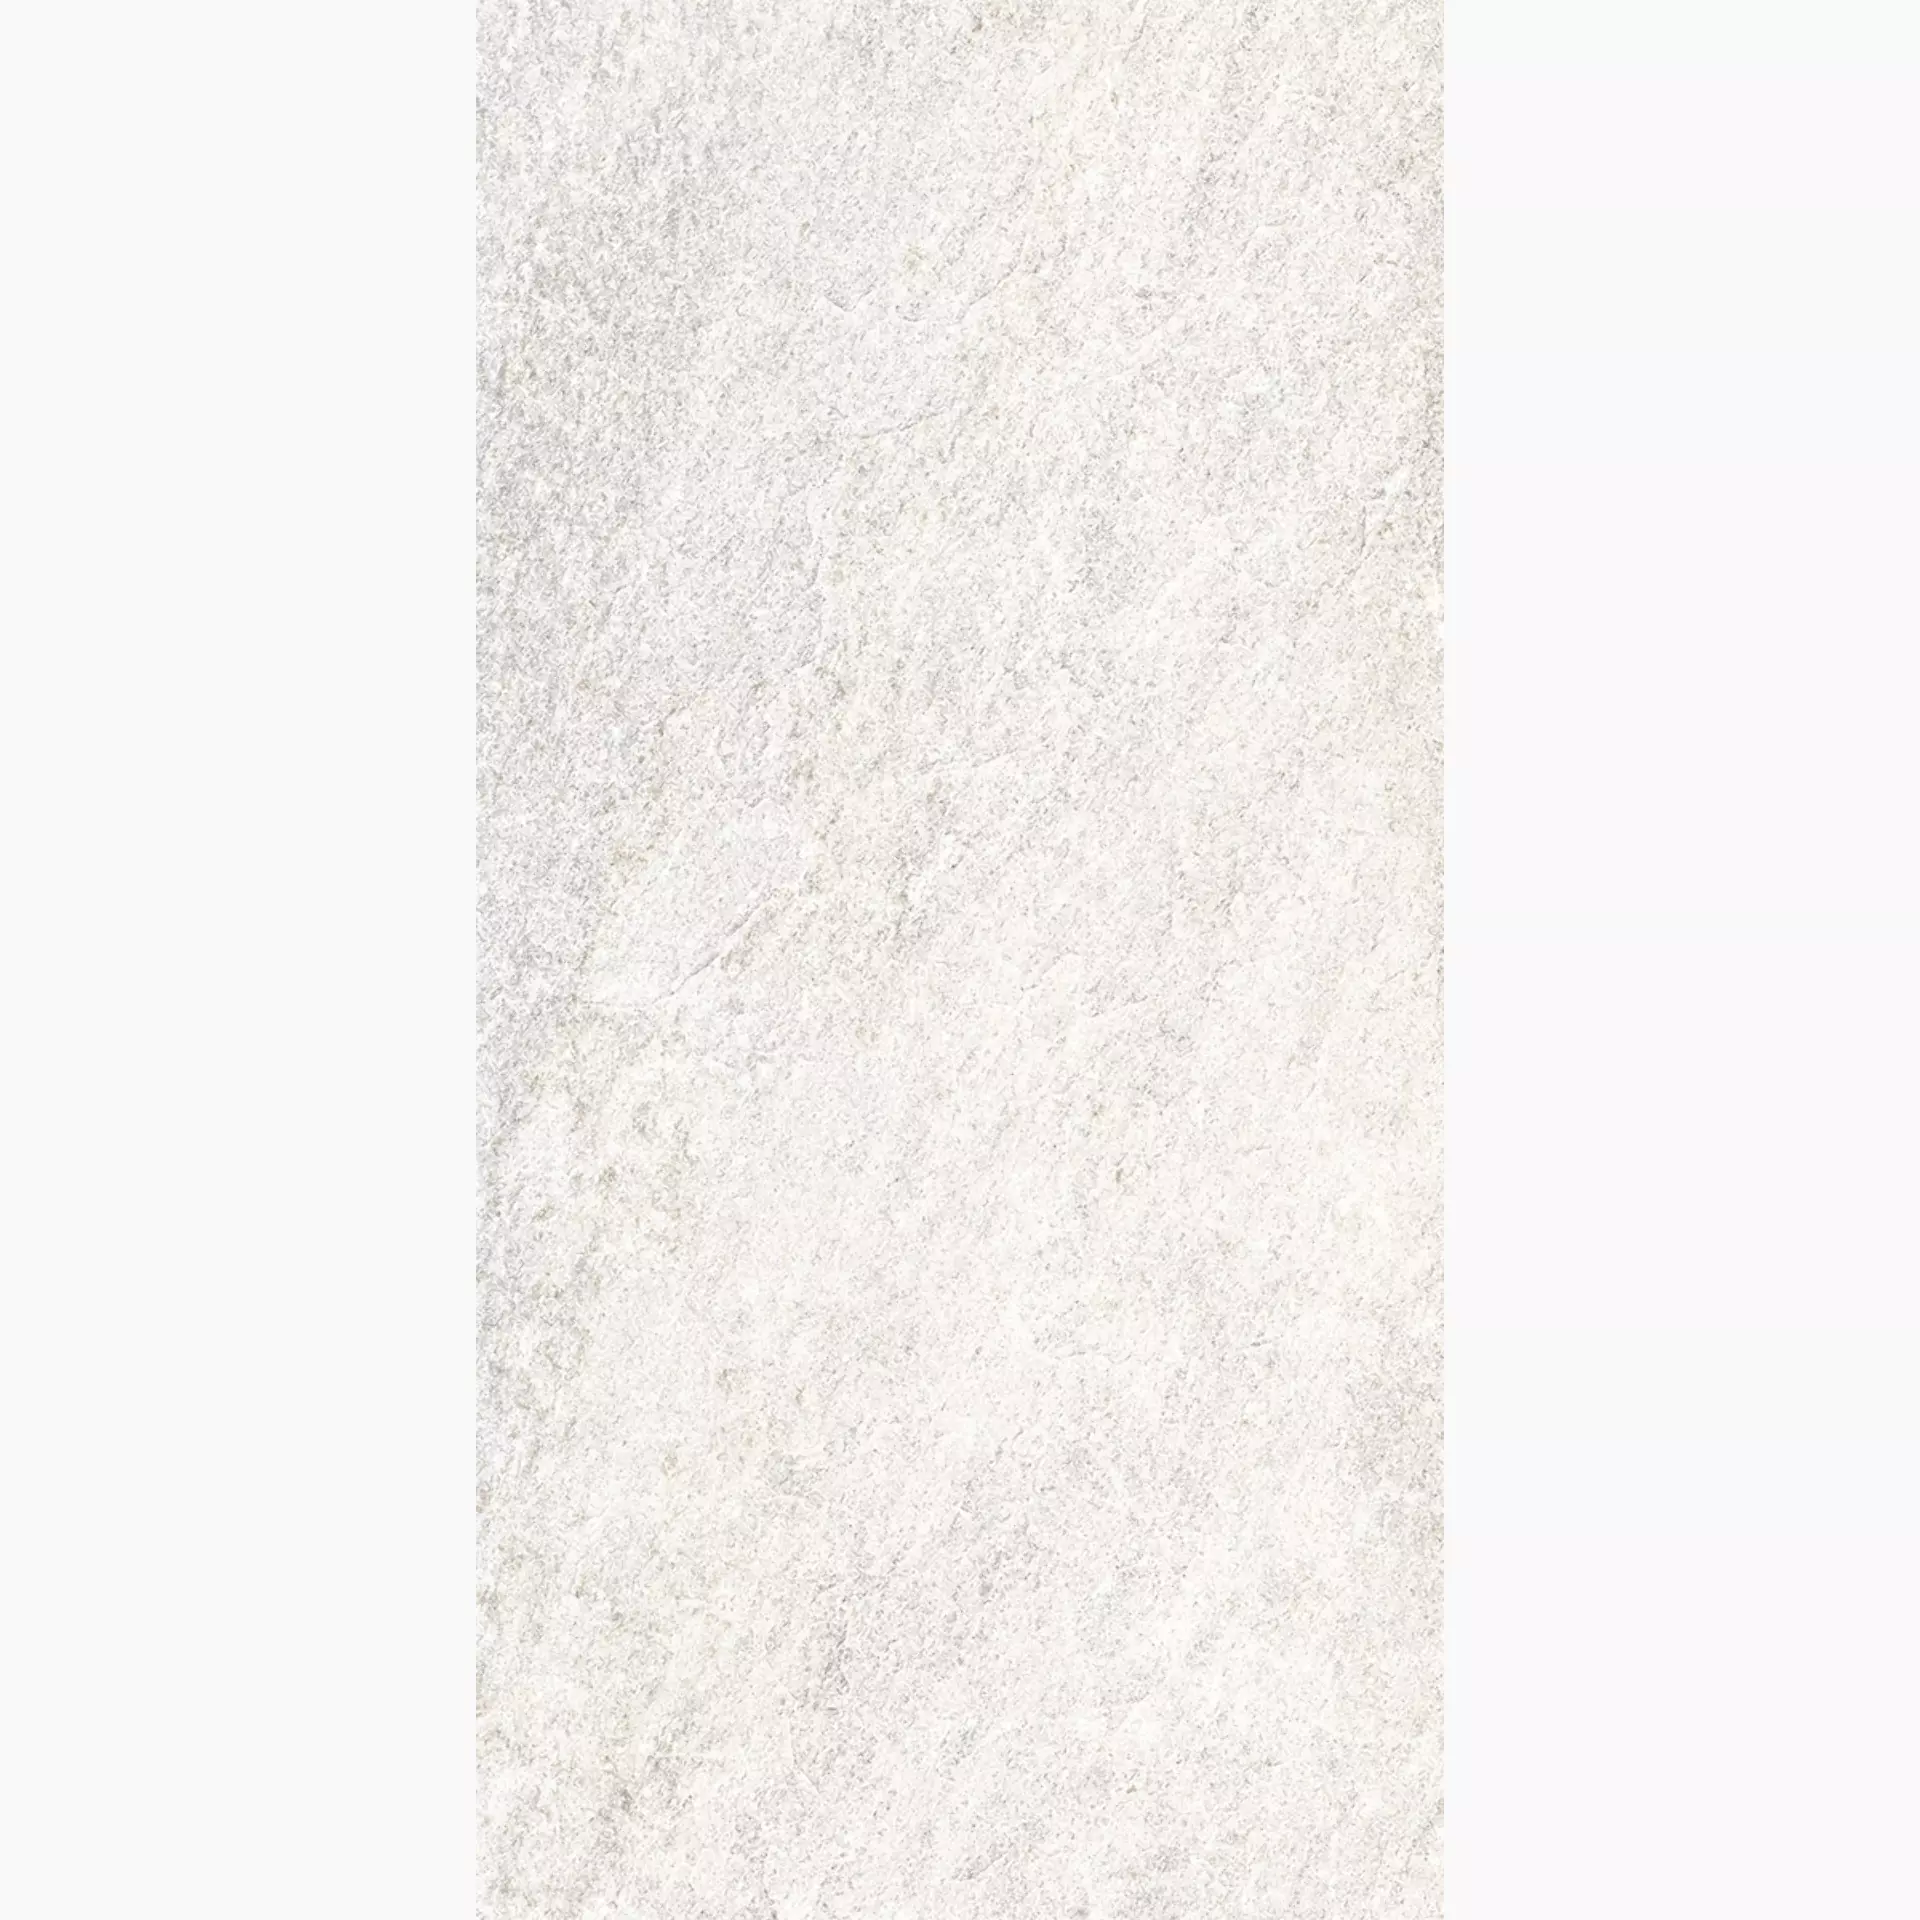 Rondine Quarzi White Naturale J87317 20,3x40,6cm 9mm